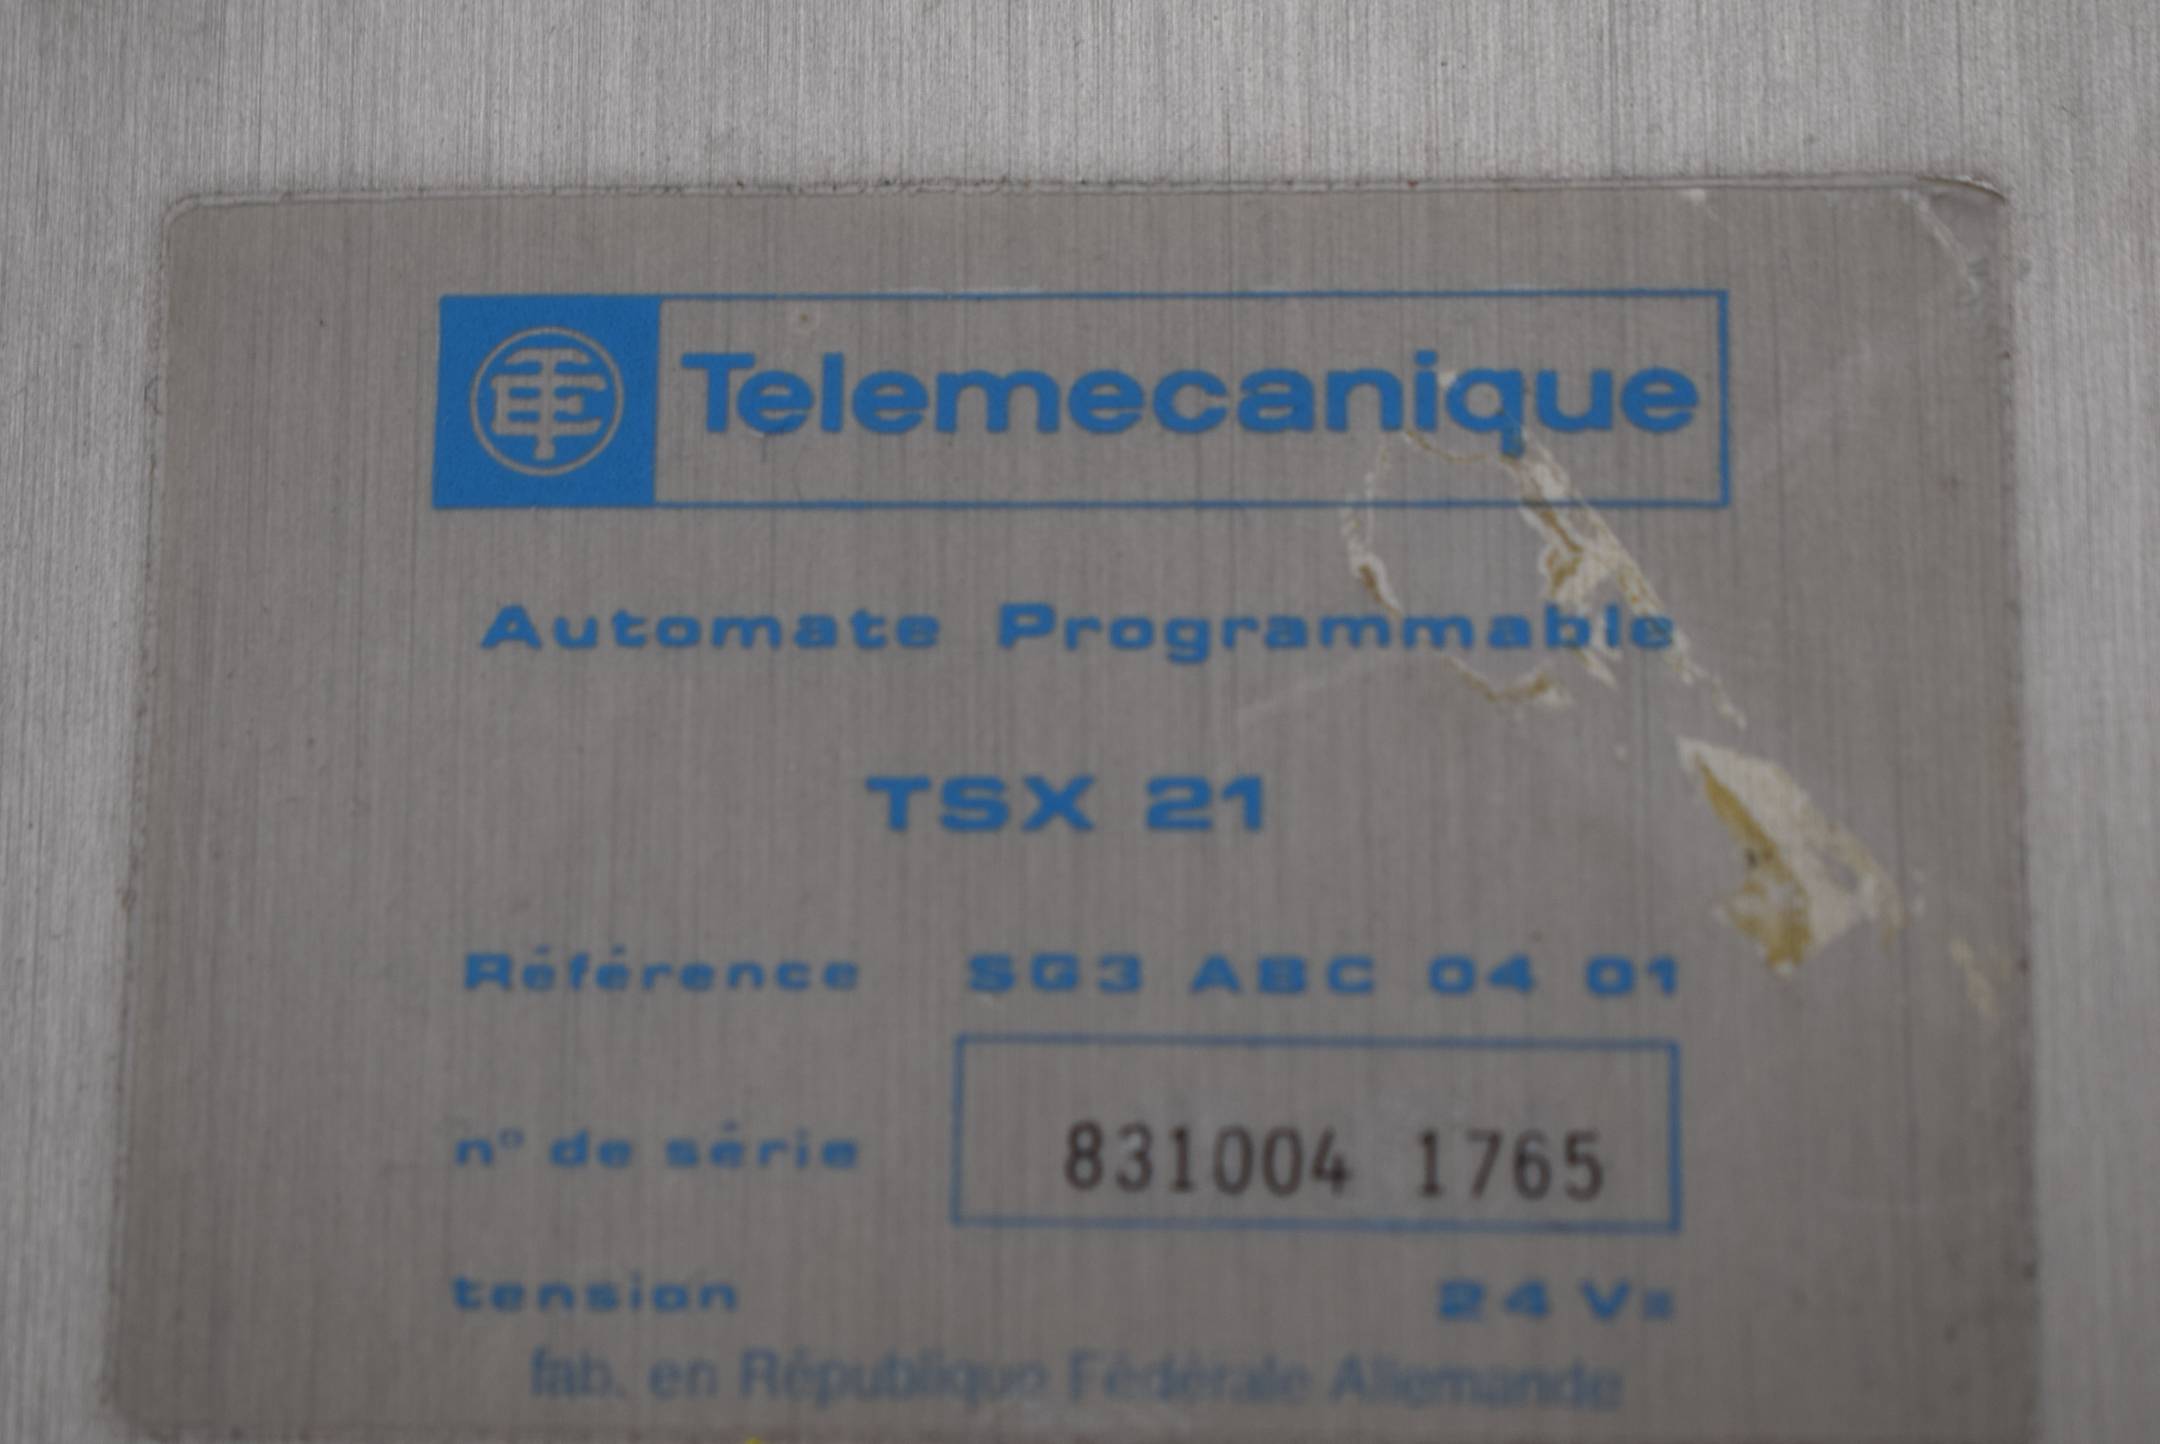 Telemecanique Automation Programmable TSX 21